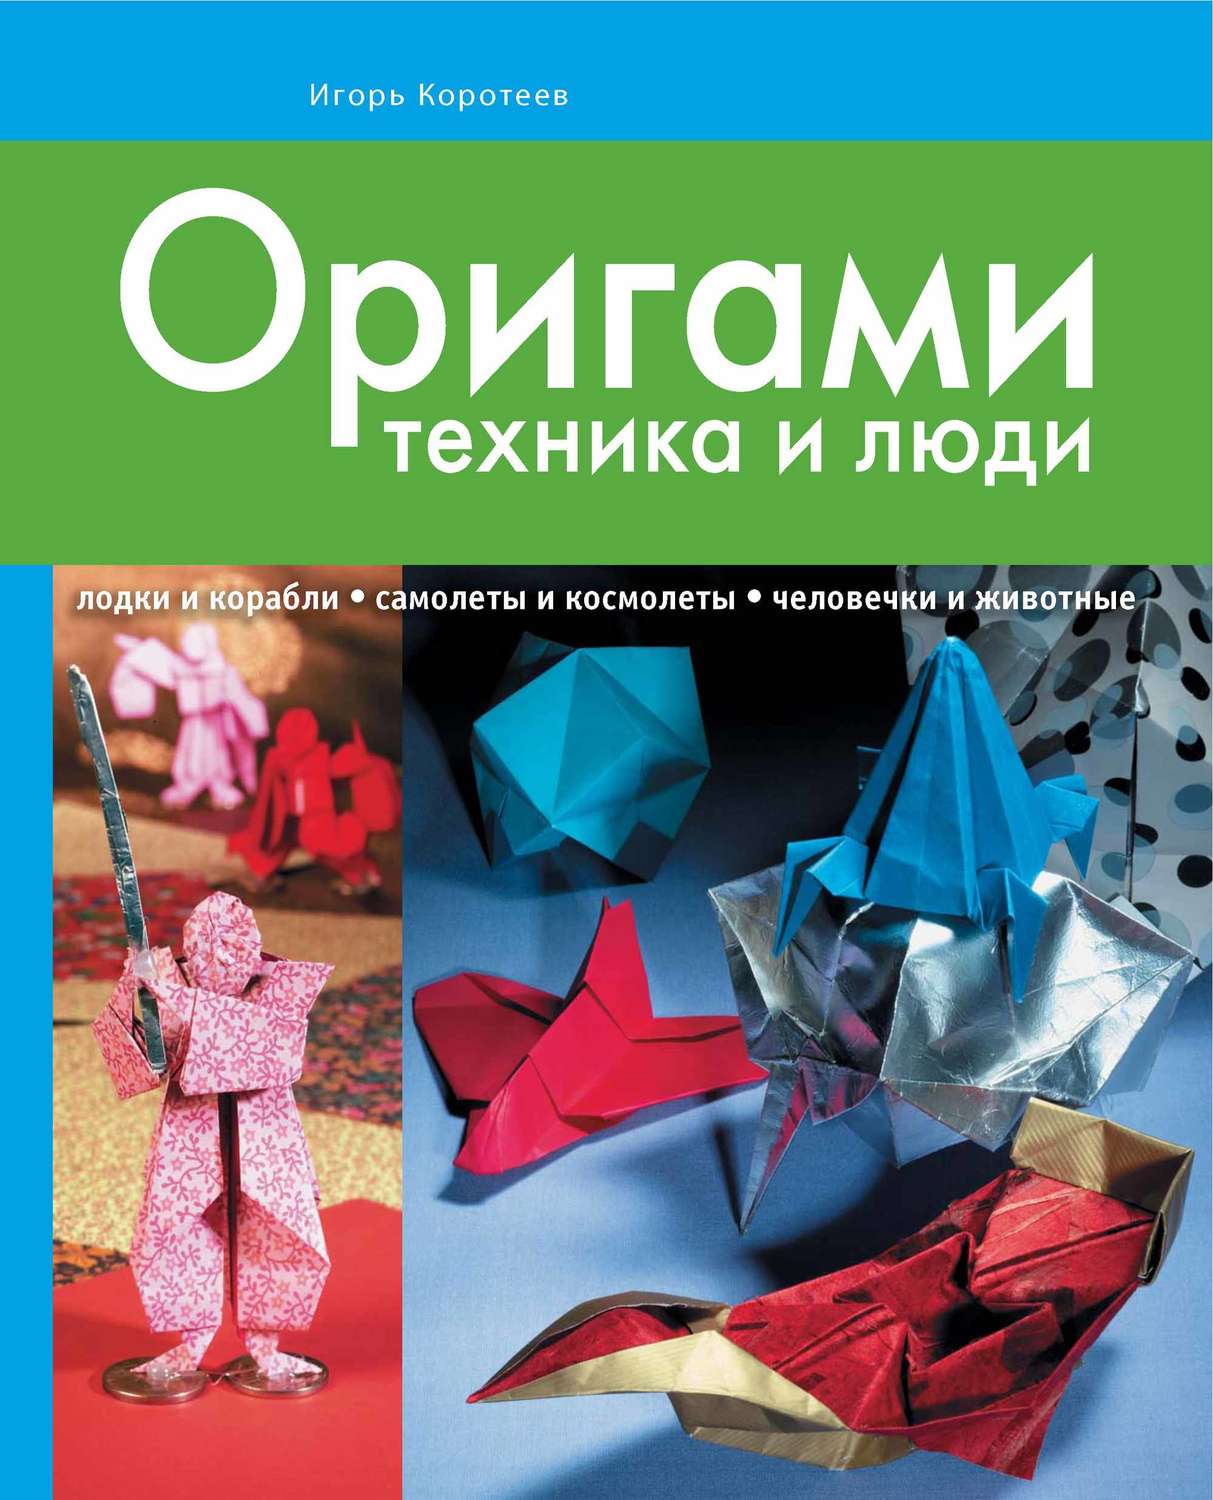 Книга по оригами скачать бесплатно pdf